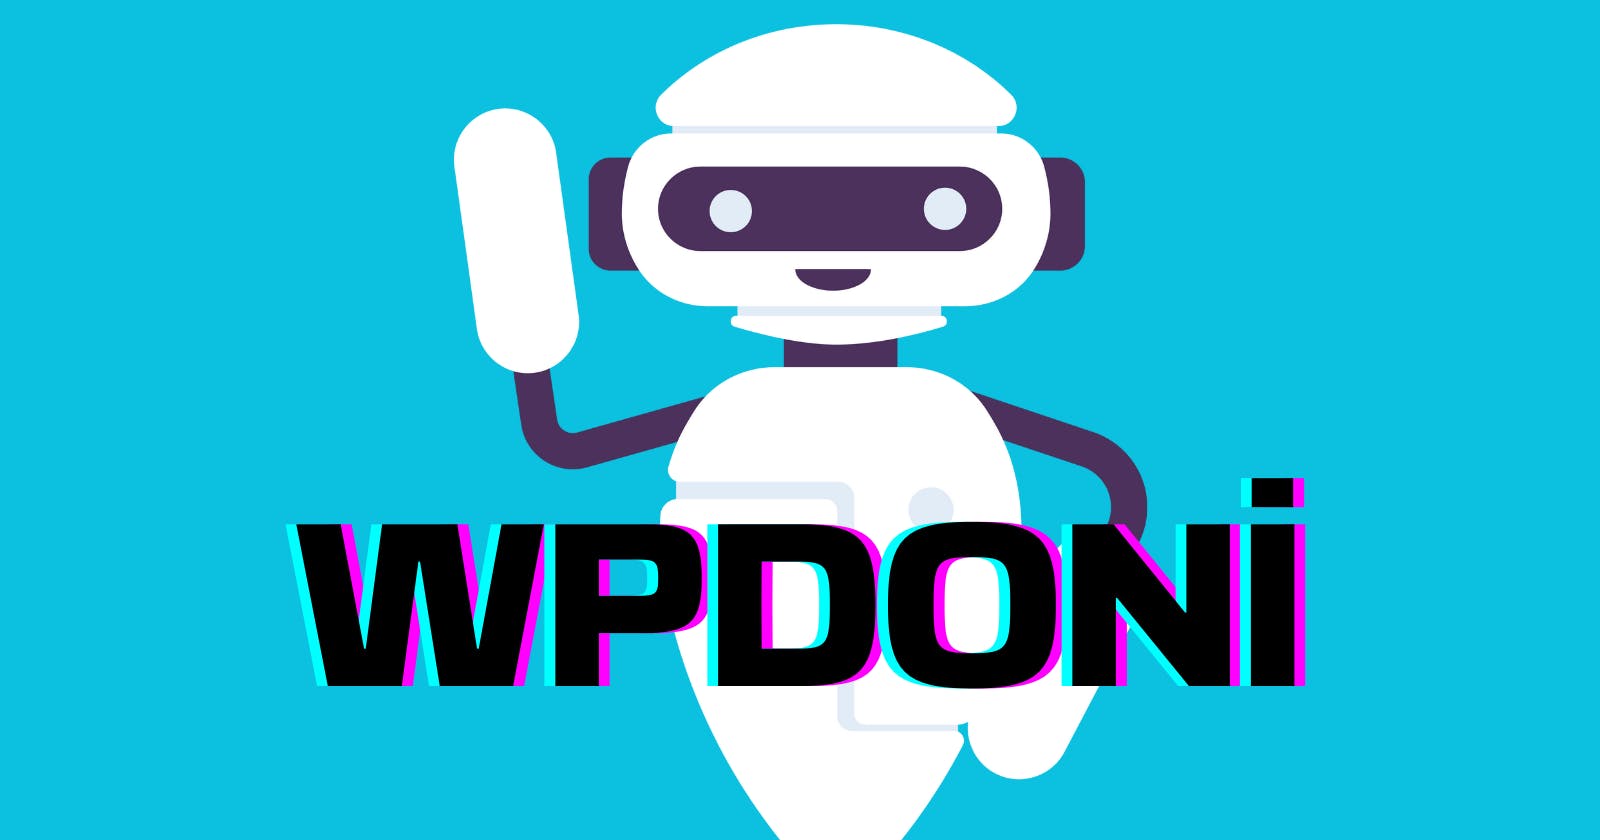 WPDONİ - A WordPress SEO Plugin With AI